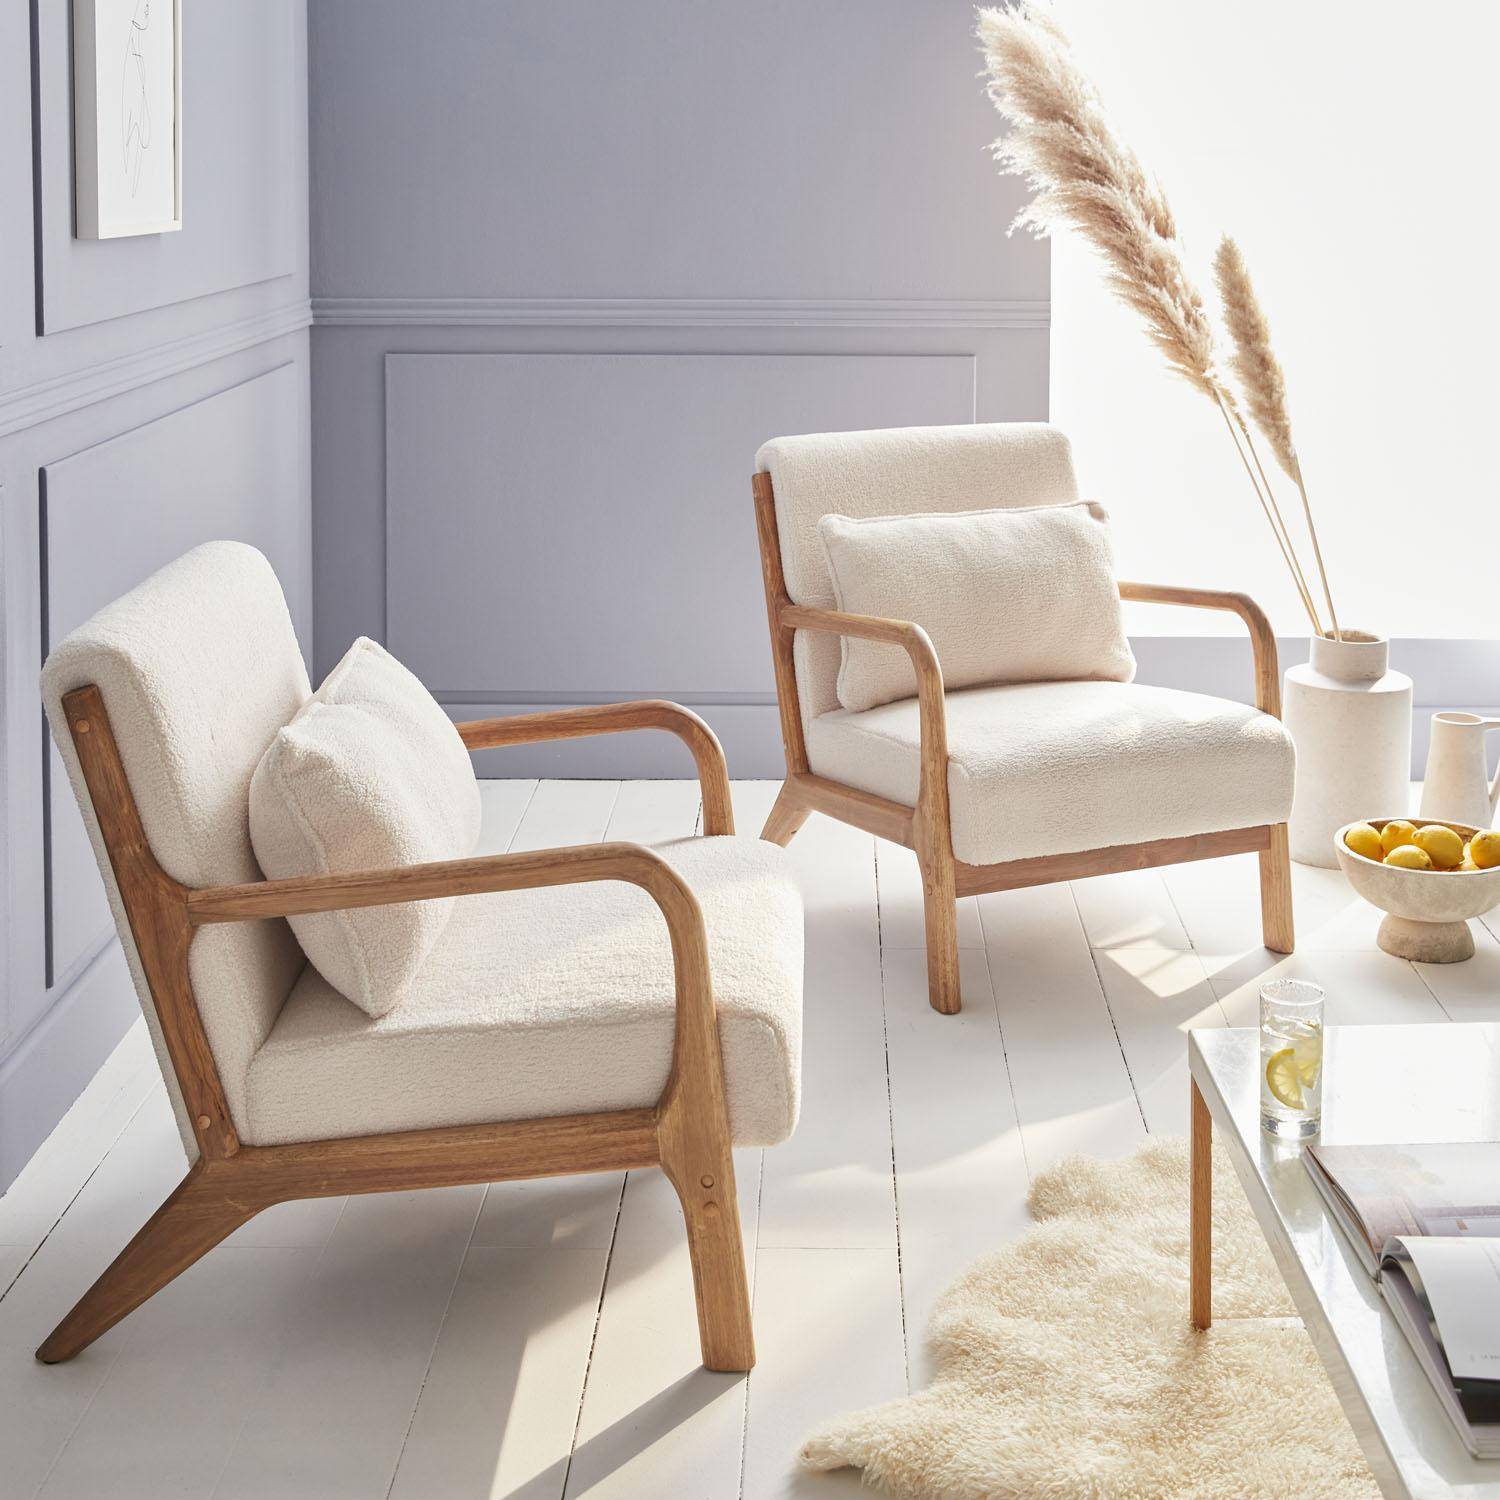 Weißer Sessel, Holz und Stoff, 1-Sitz, skandinavischer Stil, solides Holzgestell, bequeme Sitzfläche Photo2